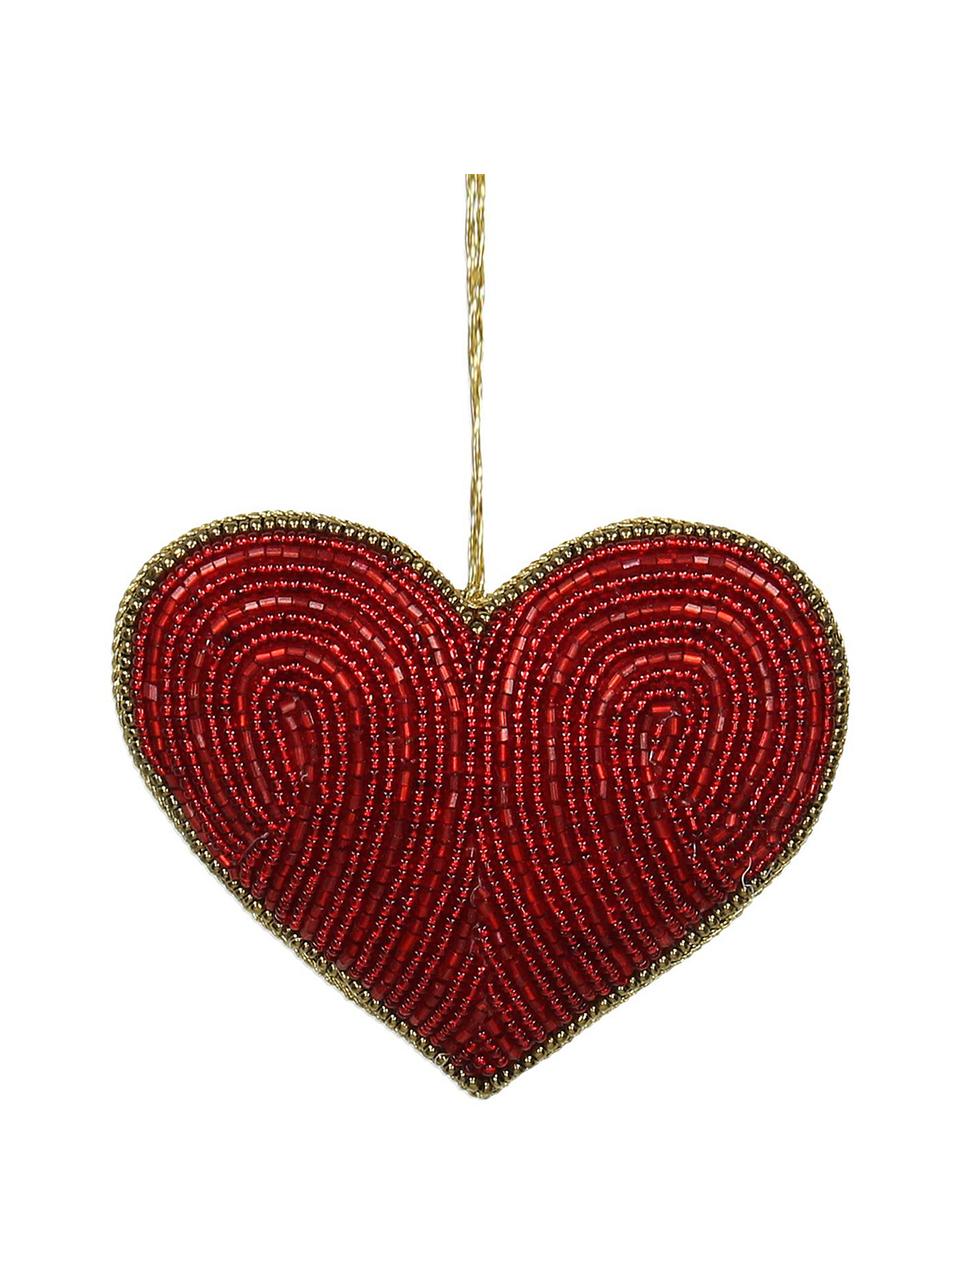 Kerstboomhangers Heart, 2 stuks, Rood, goudkleurig, 10 x 8 cm